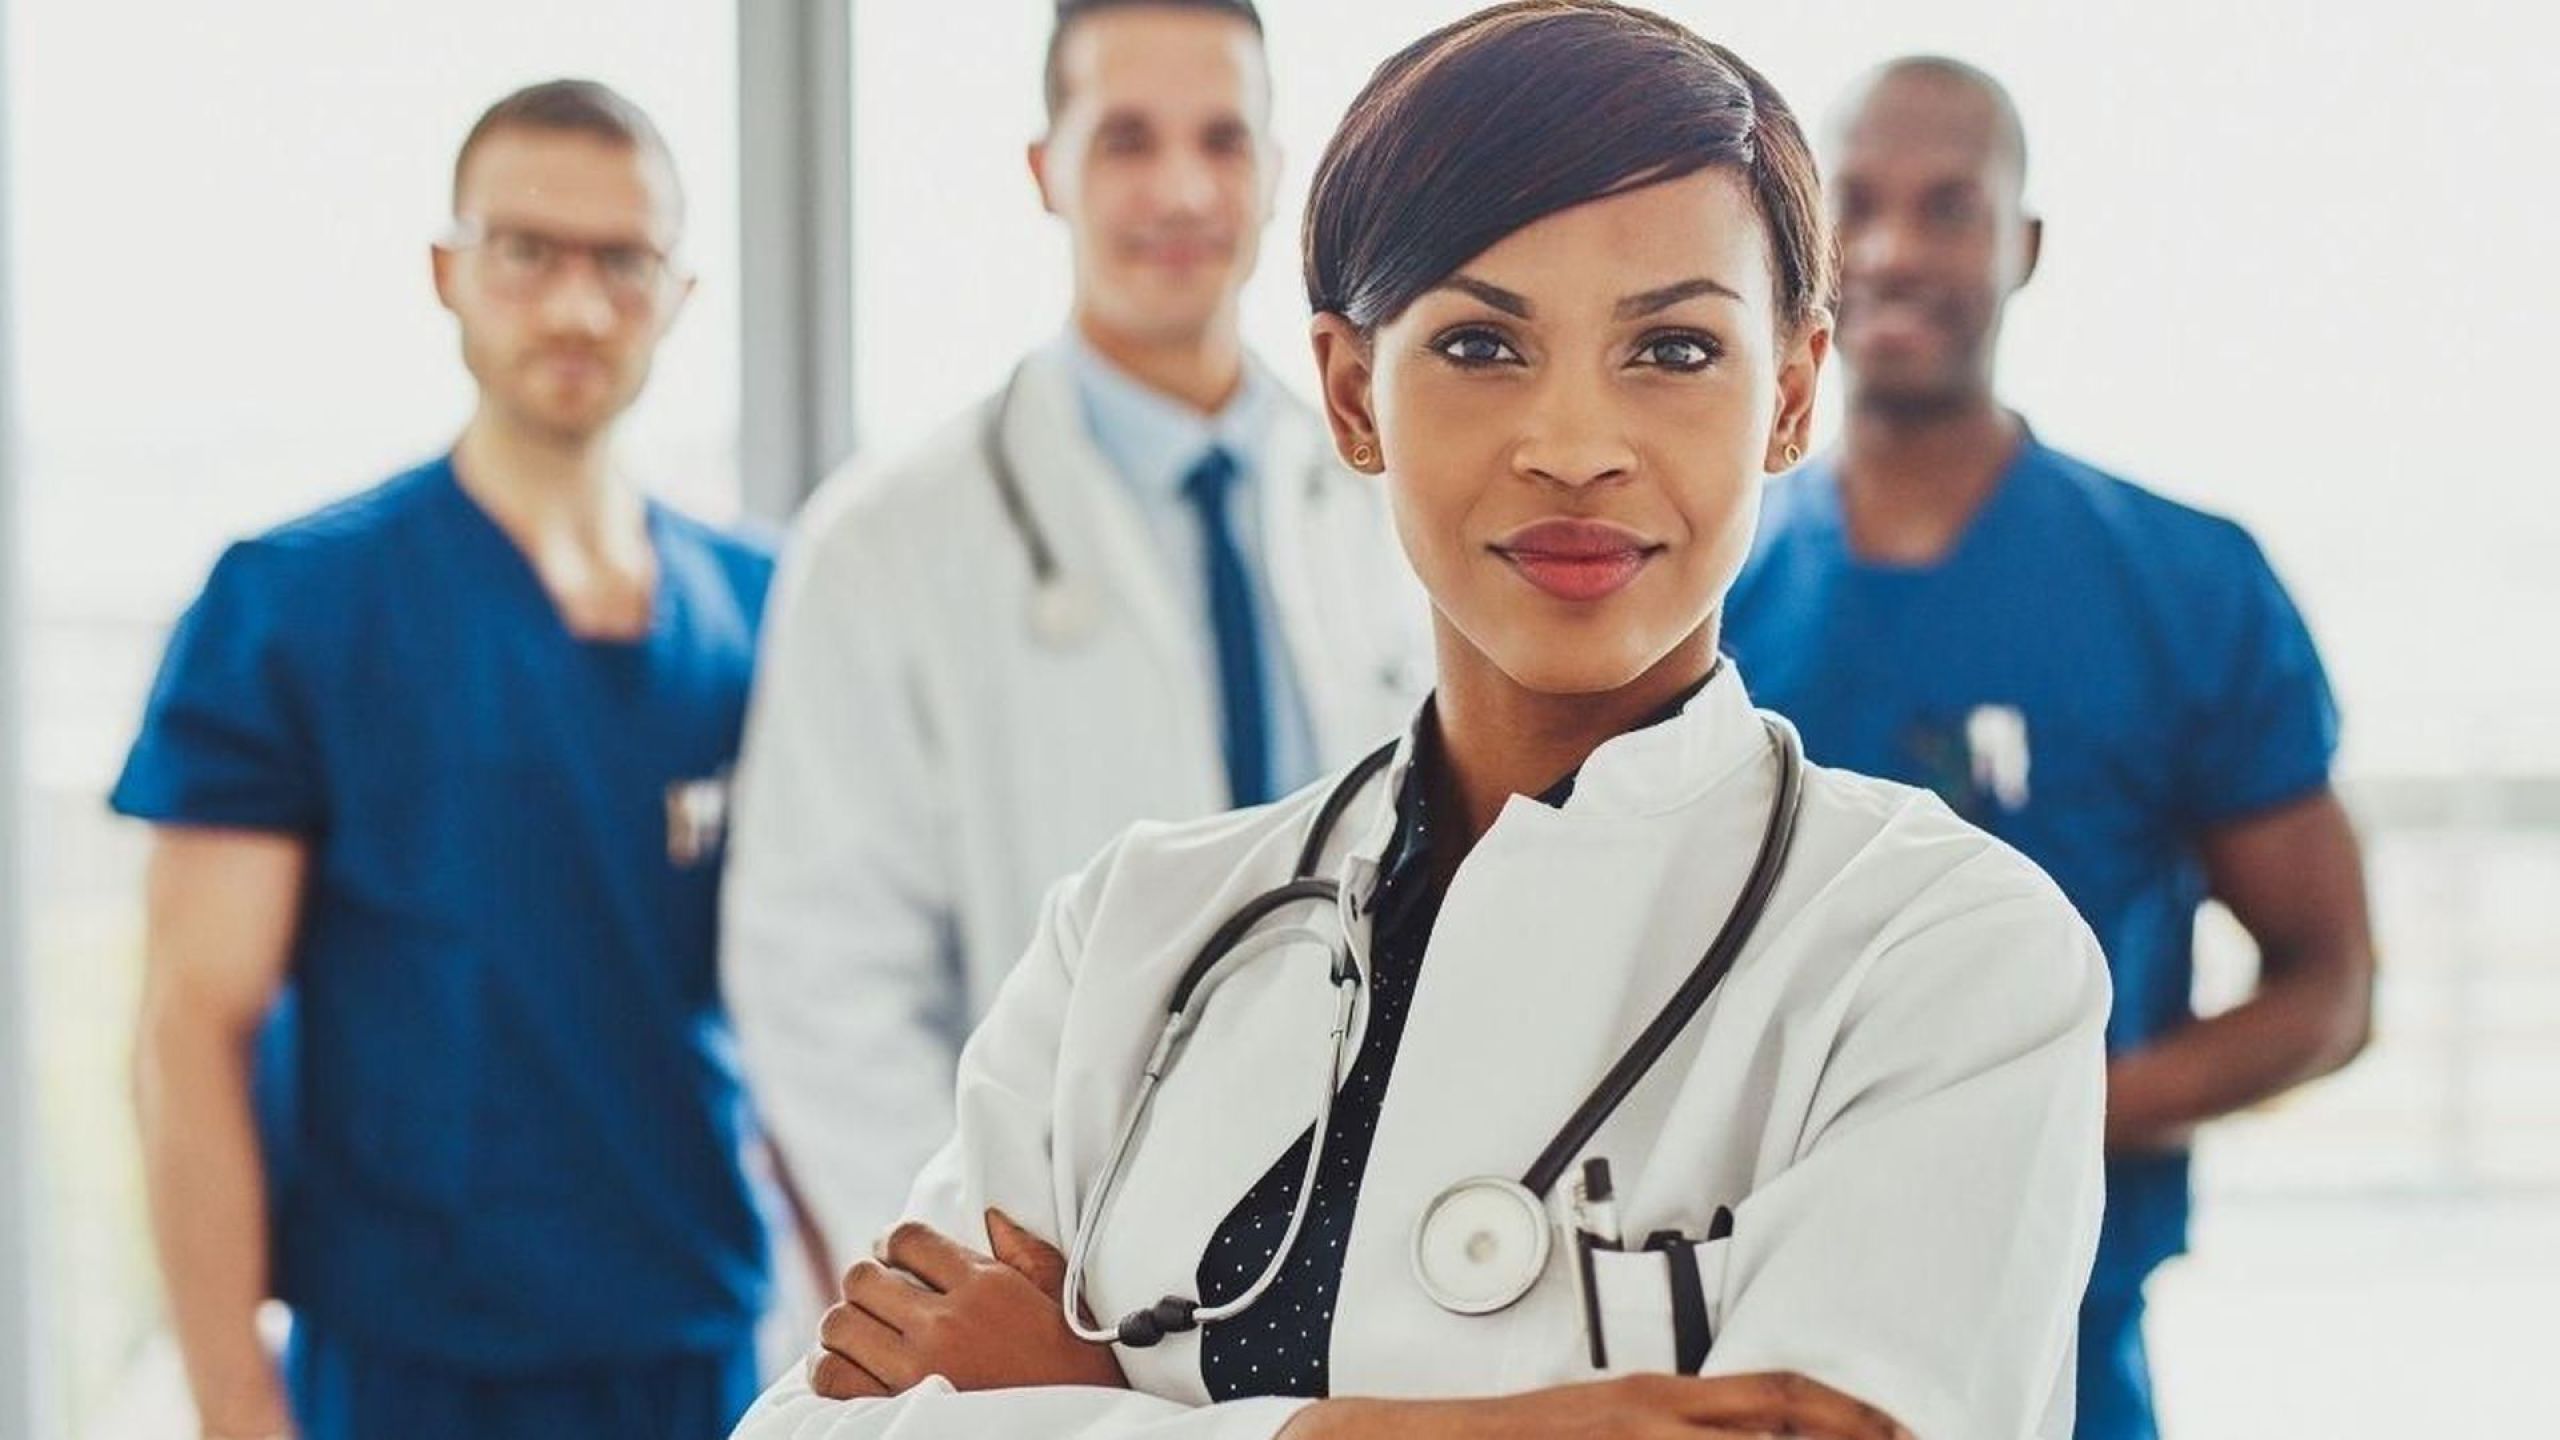 Weibliche Ärztin beweist sich als Frau in der Medizin gegenüber ihren männlichen Kollegen im Hintergrund